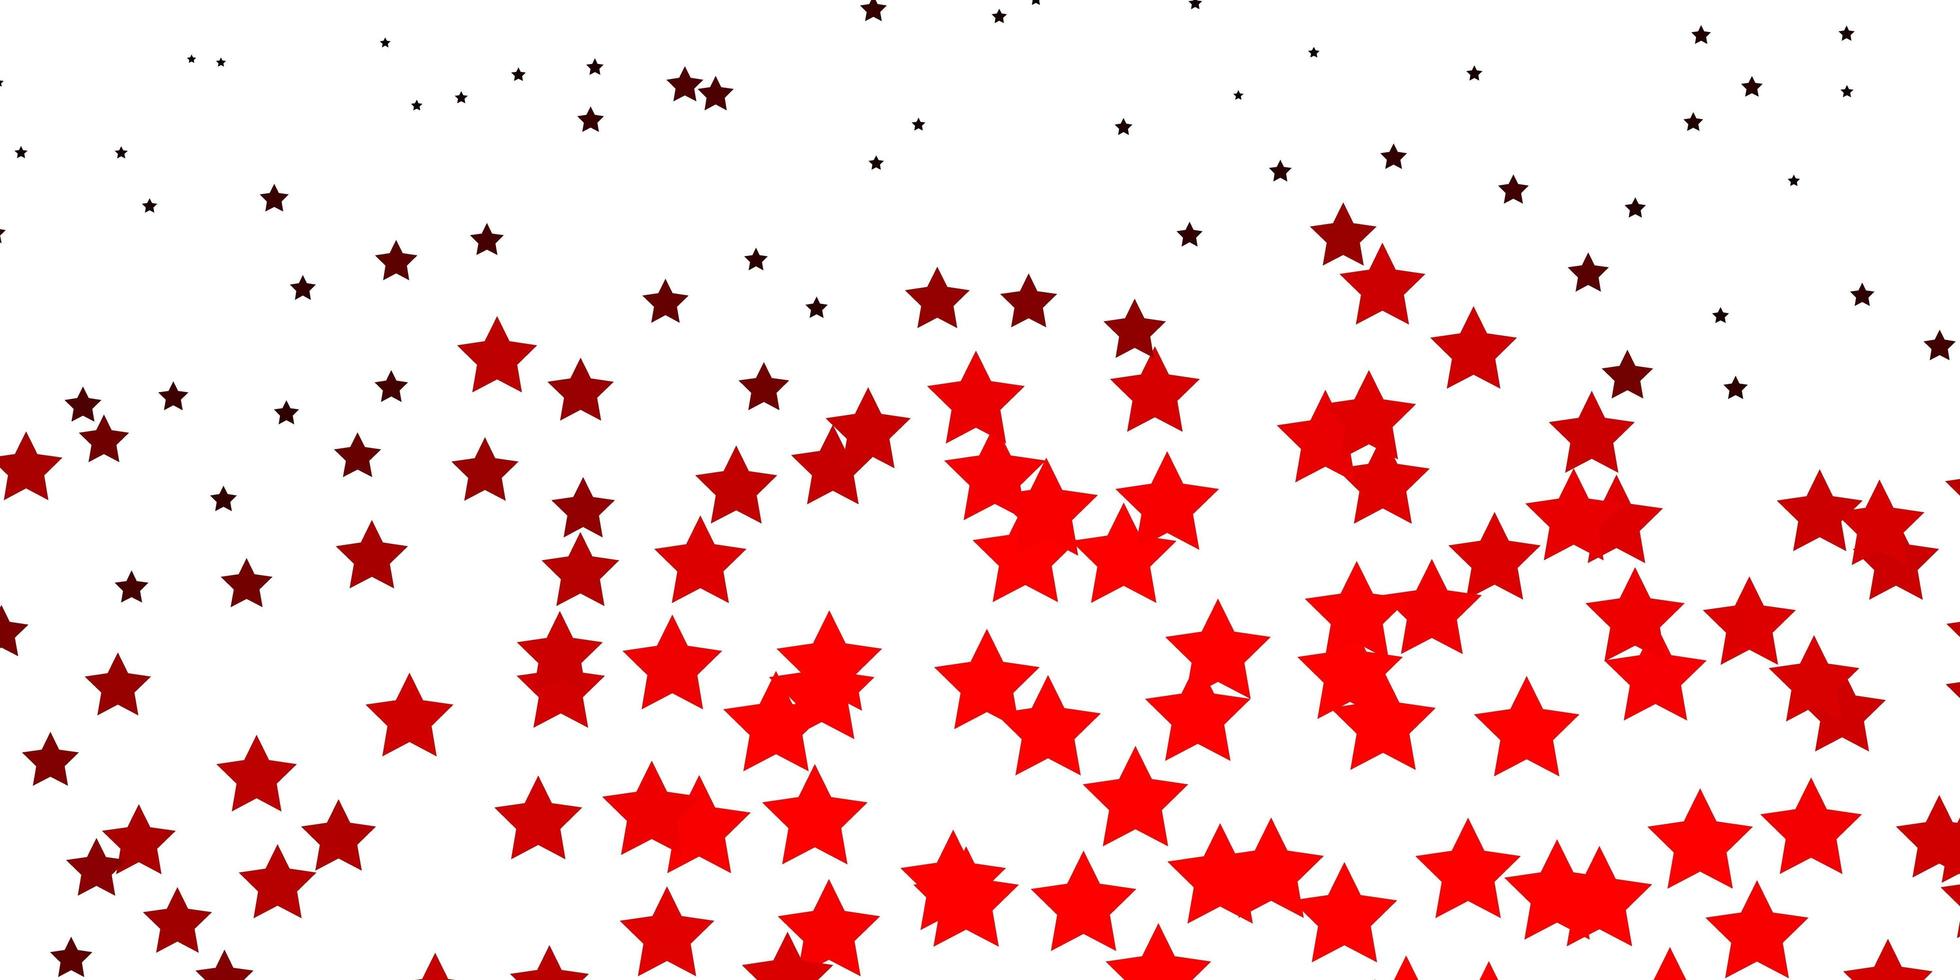 texture vecteur rouge foncé avec de belles étoiles. illustration abstraite géométrique moderne avec des étoiles. modèle pour les sites Web, pages de destination.